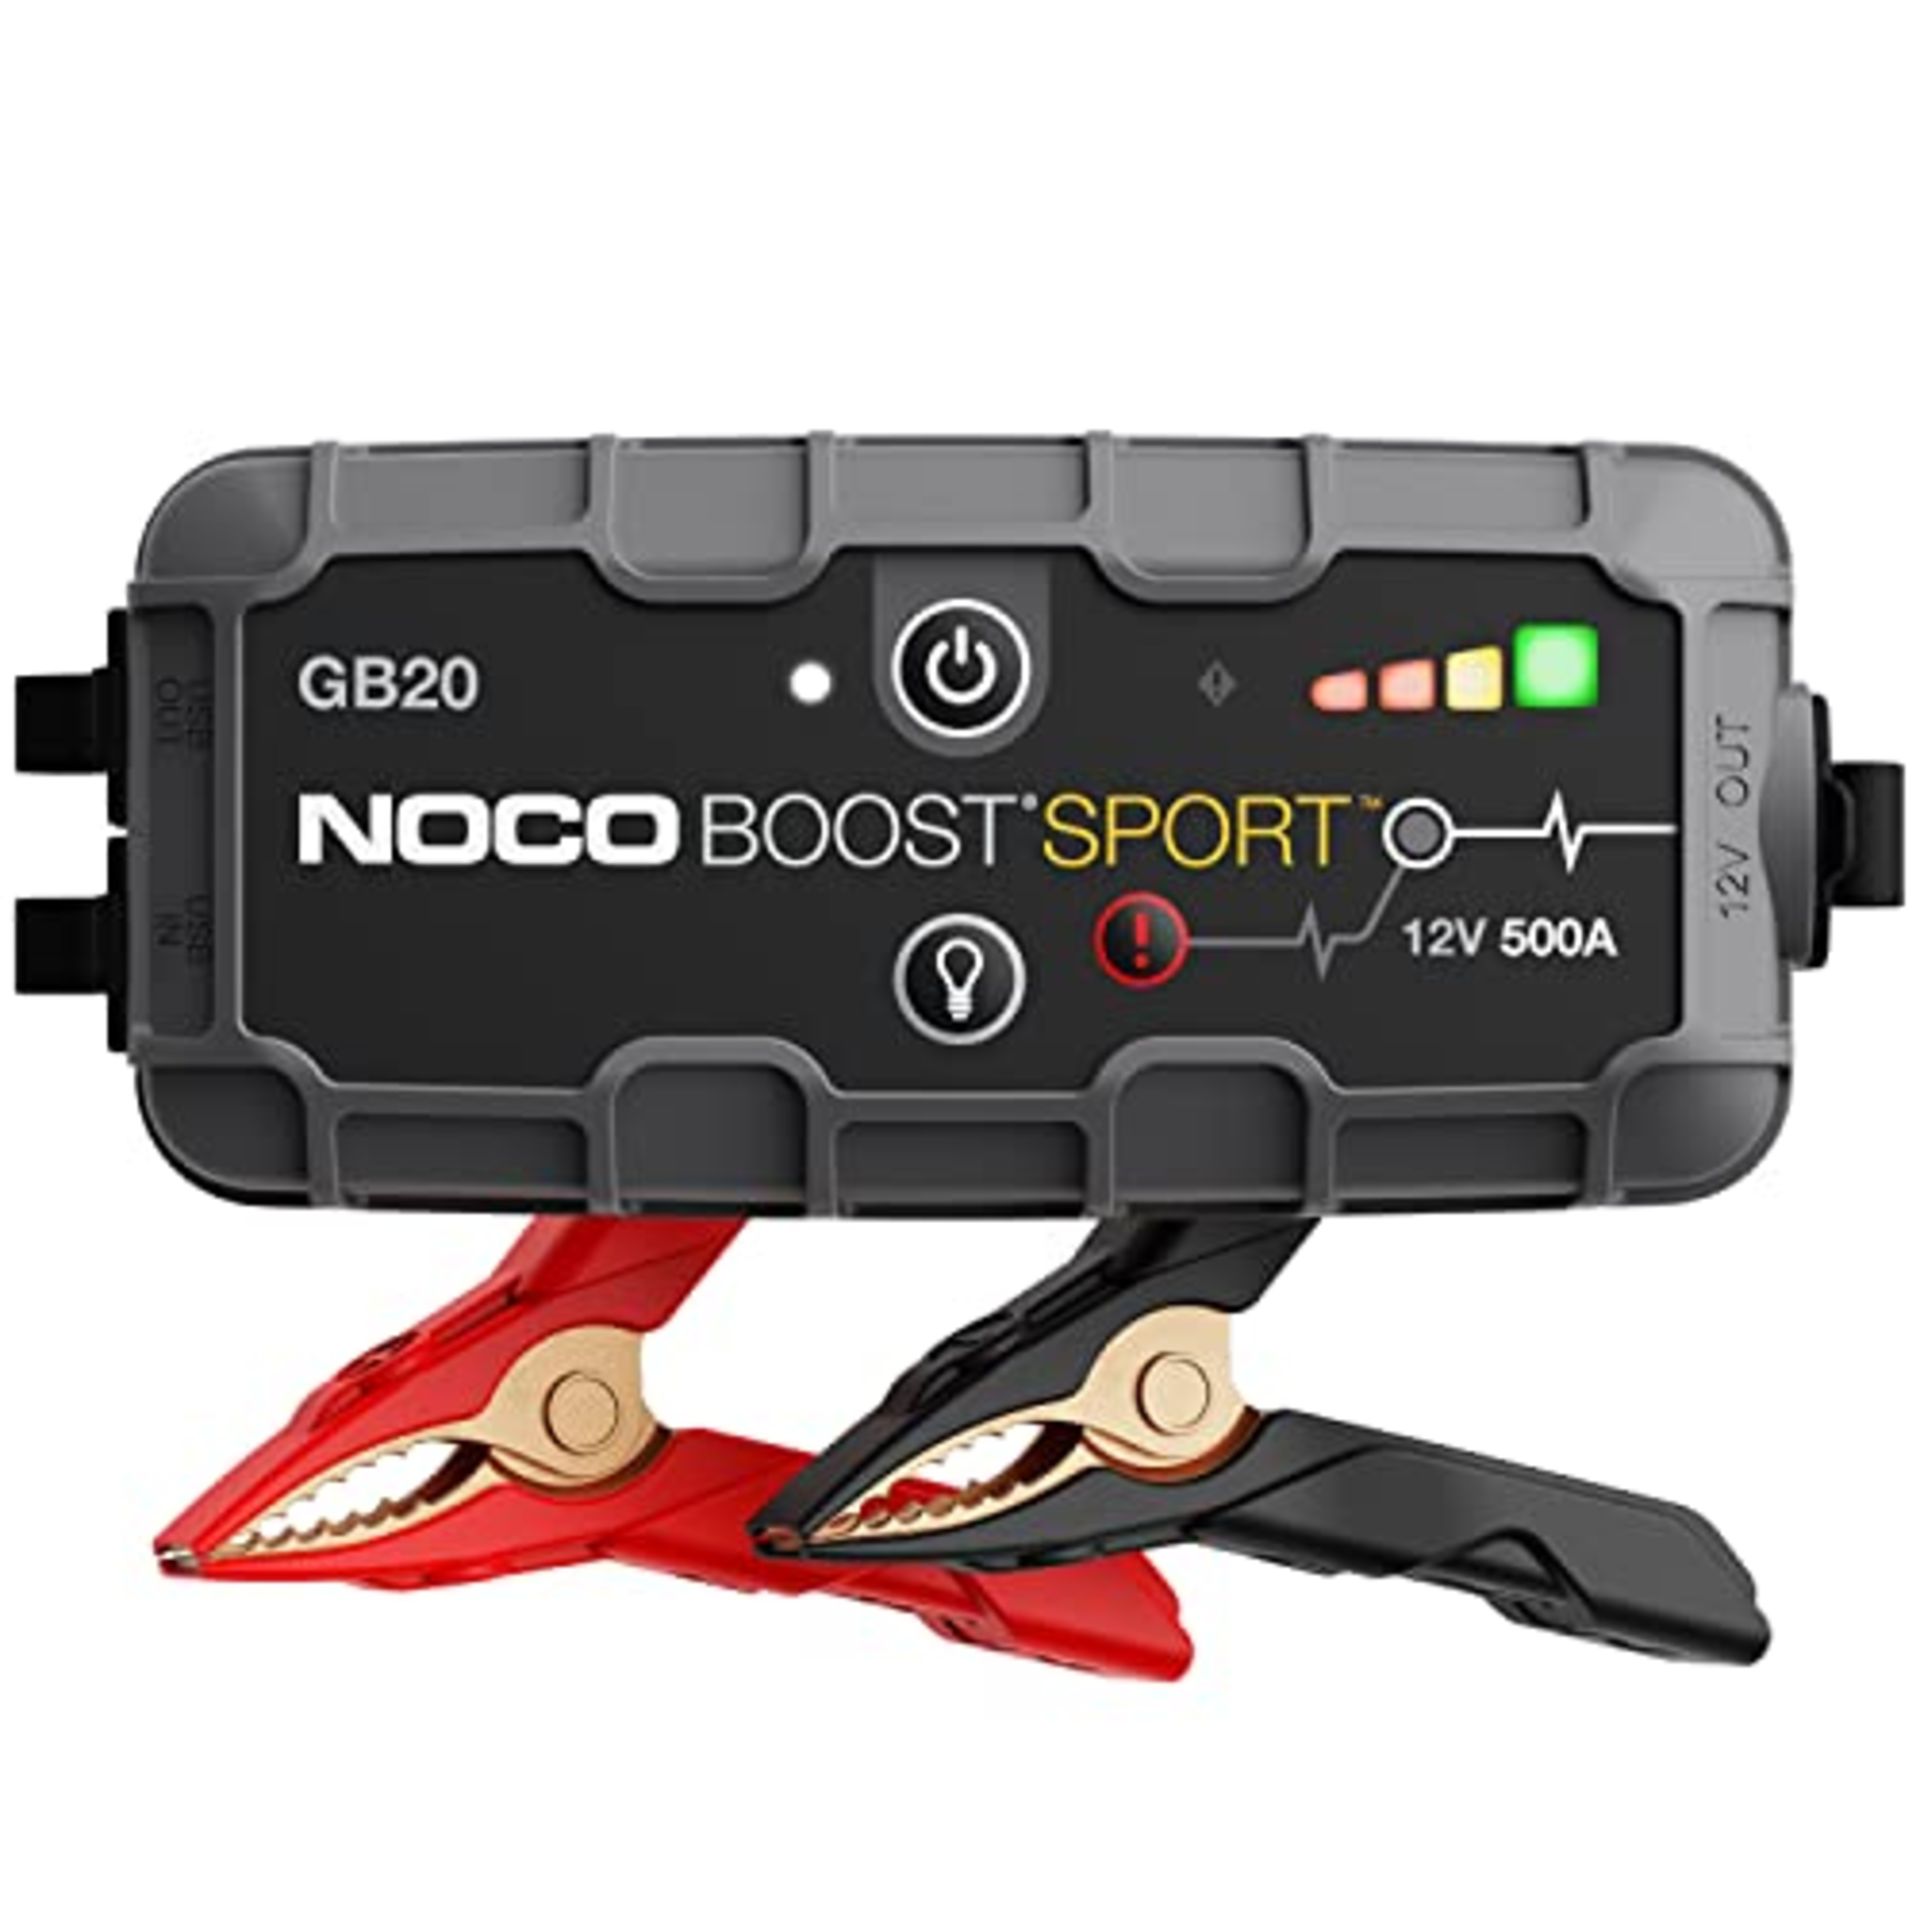 RRP £89.00 NOCO Boost Sport GB20 500A UltraSafe Car Jump Starter, Jump Starter Power Pack, 12V Ba